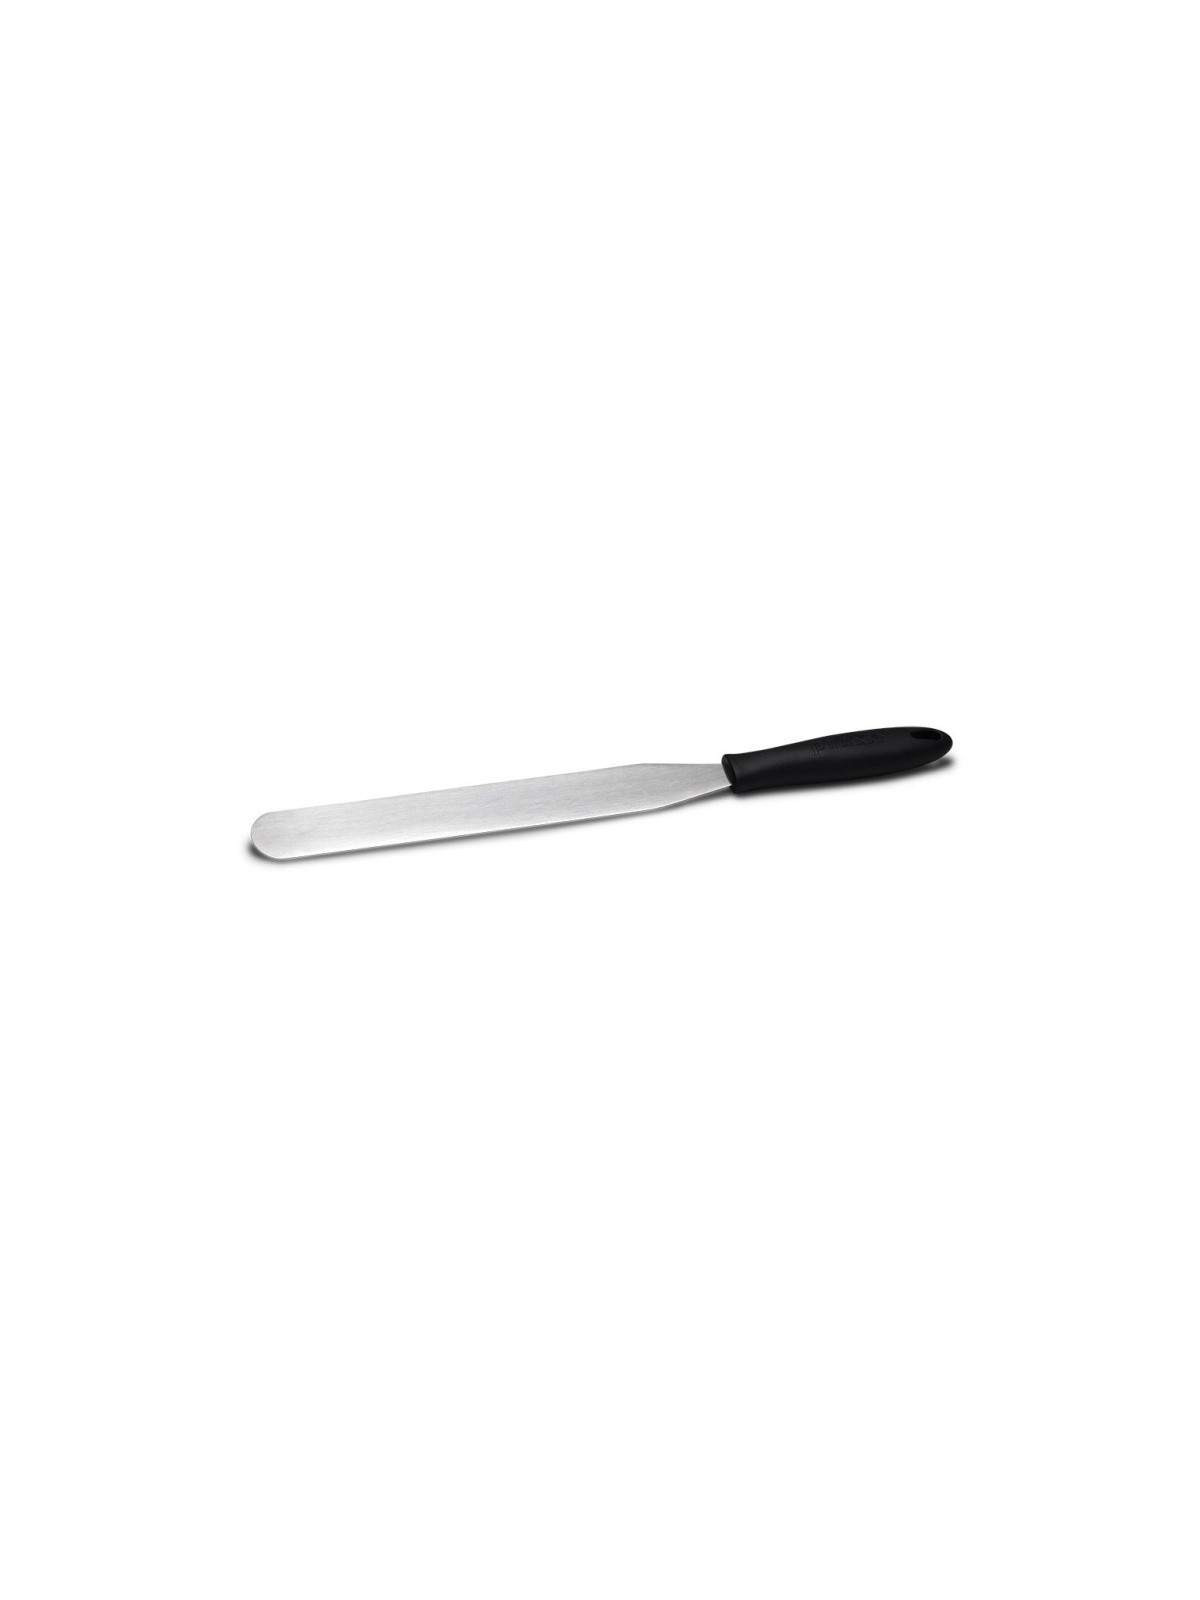 Patisse spatula  RVS dekormesser - Streichpalette 25cm